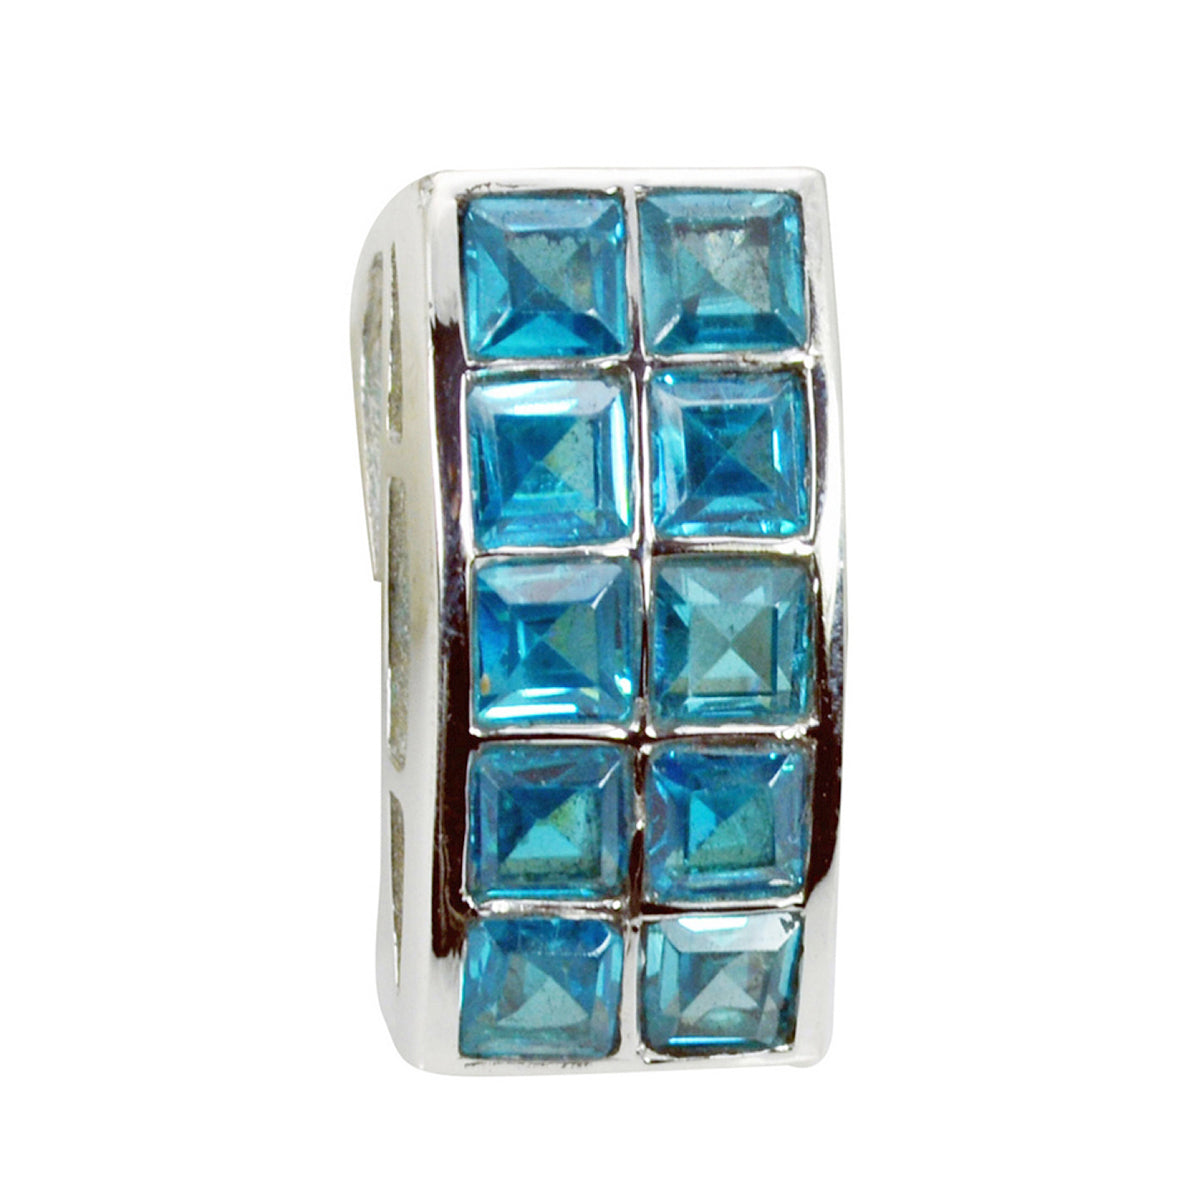 Riyo preciosas gemas cuadradas facetadas topacio azul azul colgante de plata maciza regalo para boda